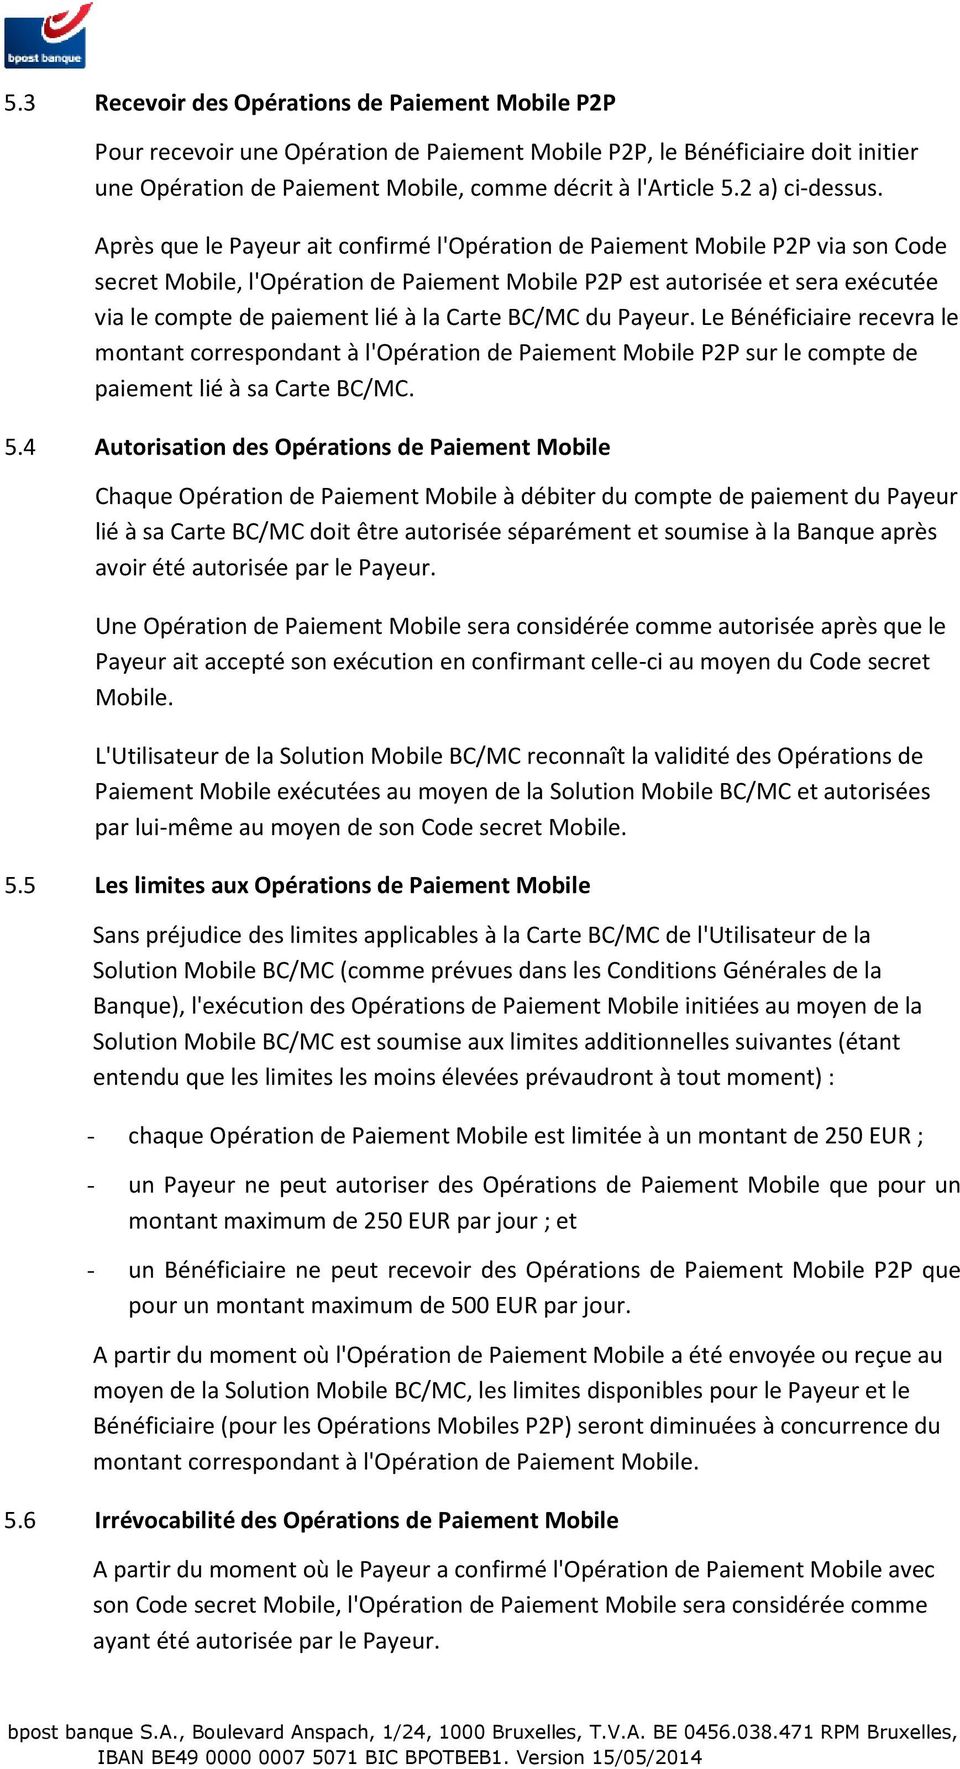 Après que le Payeur ait confirmé l'opération de Paiement Mobile P2P via son Code secret Mobile, l'opération de Paiement Mobile P2P est autorisée et sera exécutée via le compte de paiement lié à la